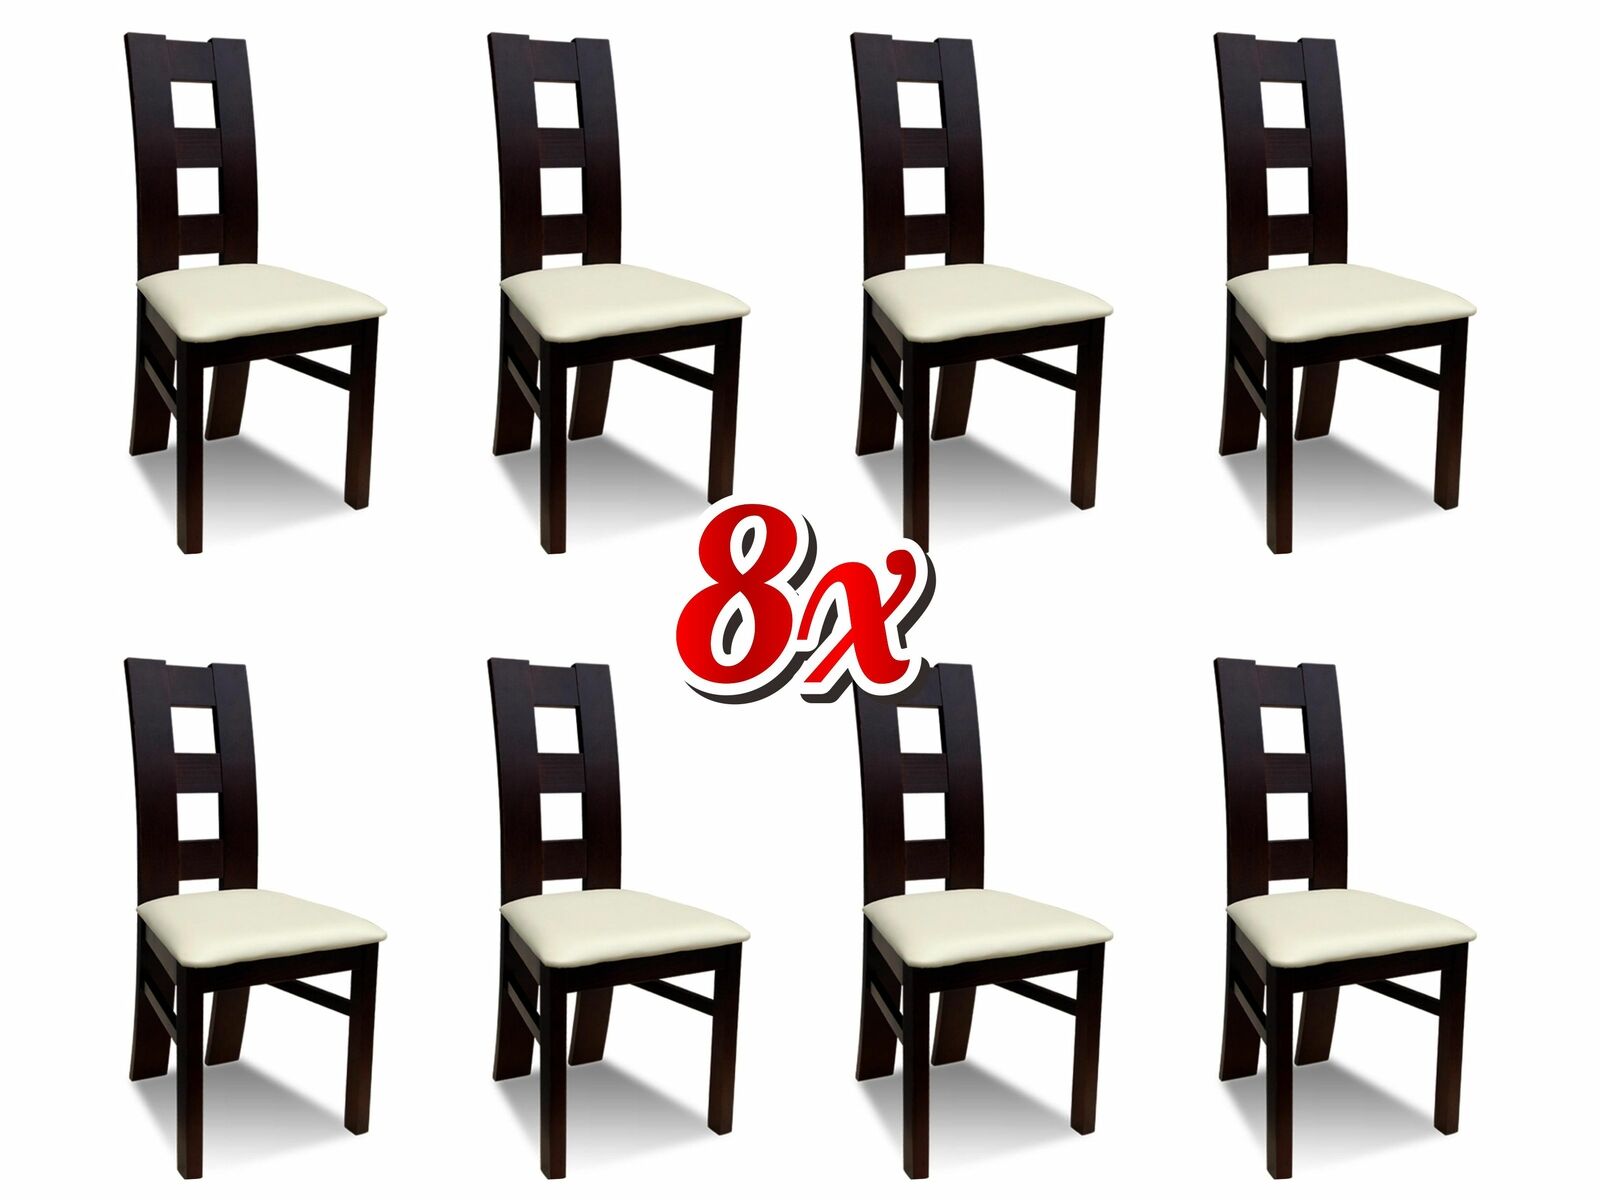 Gruppe Küche Neu 8x Stühle Esszimmer Restaurant Design Stühle Set Stuhl Gruppen